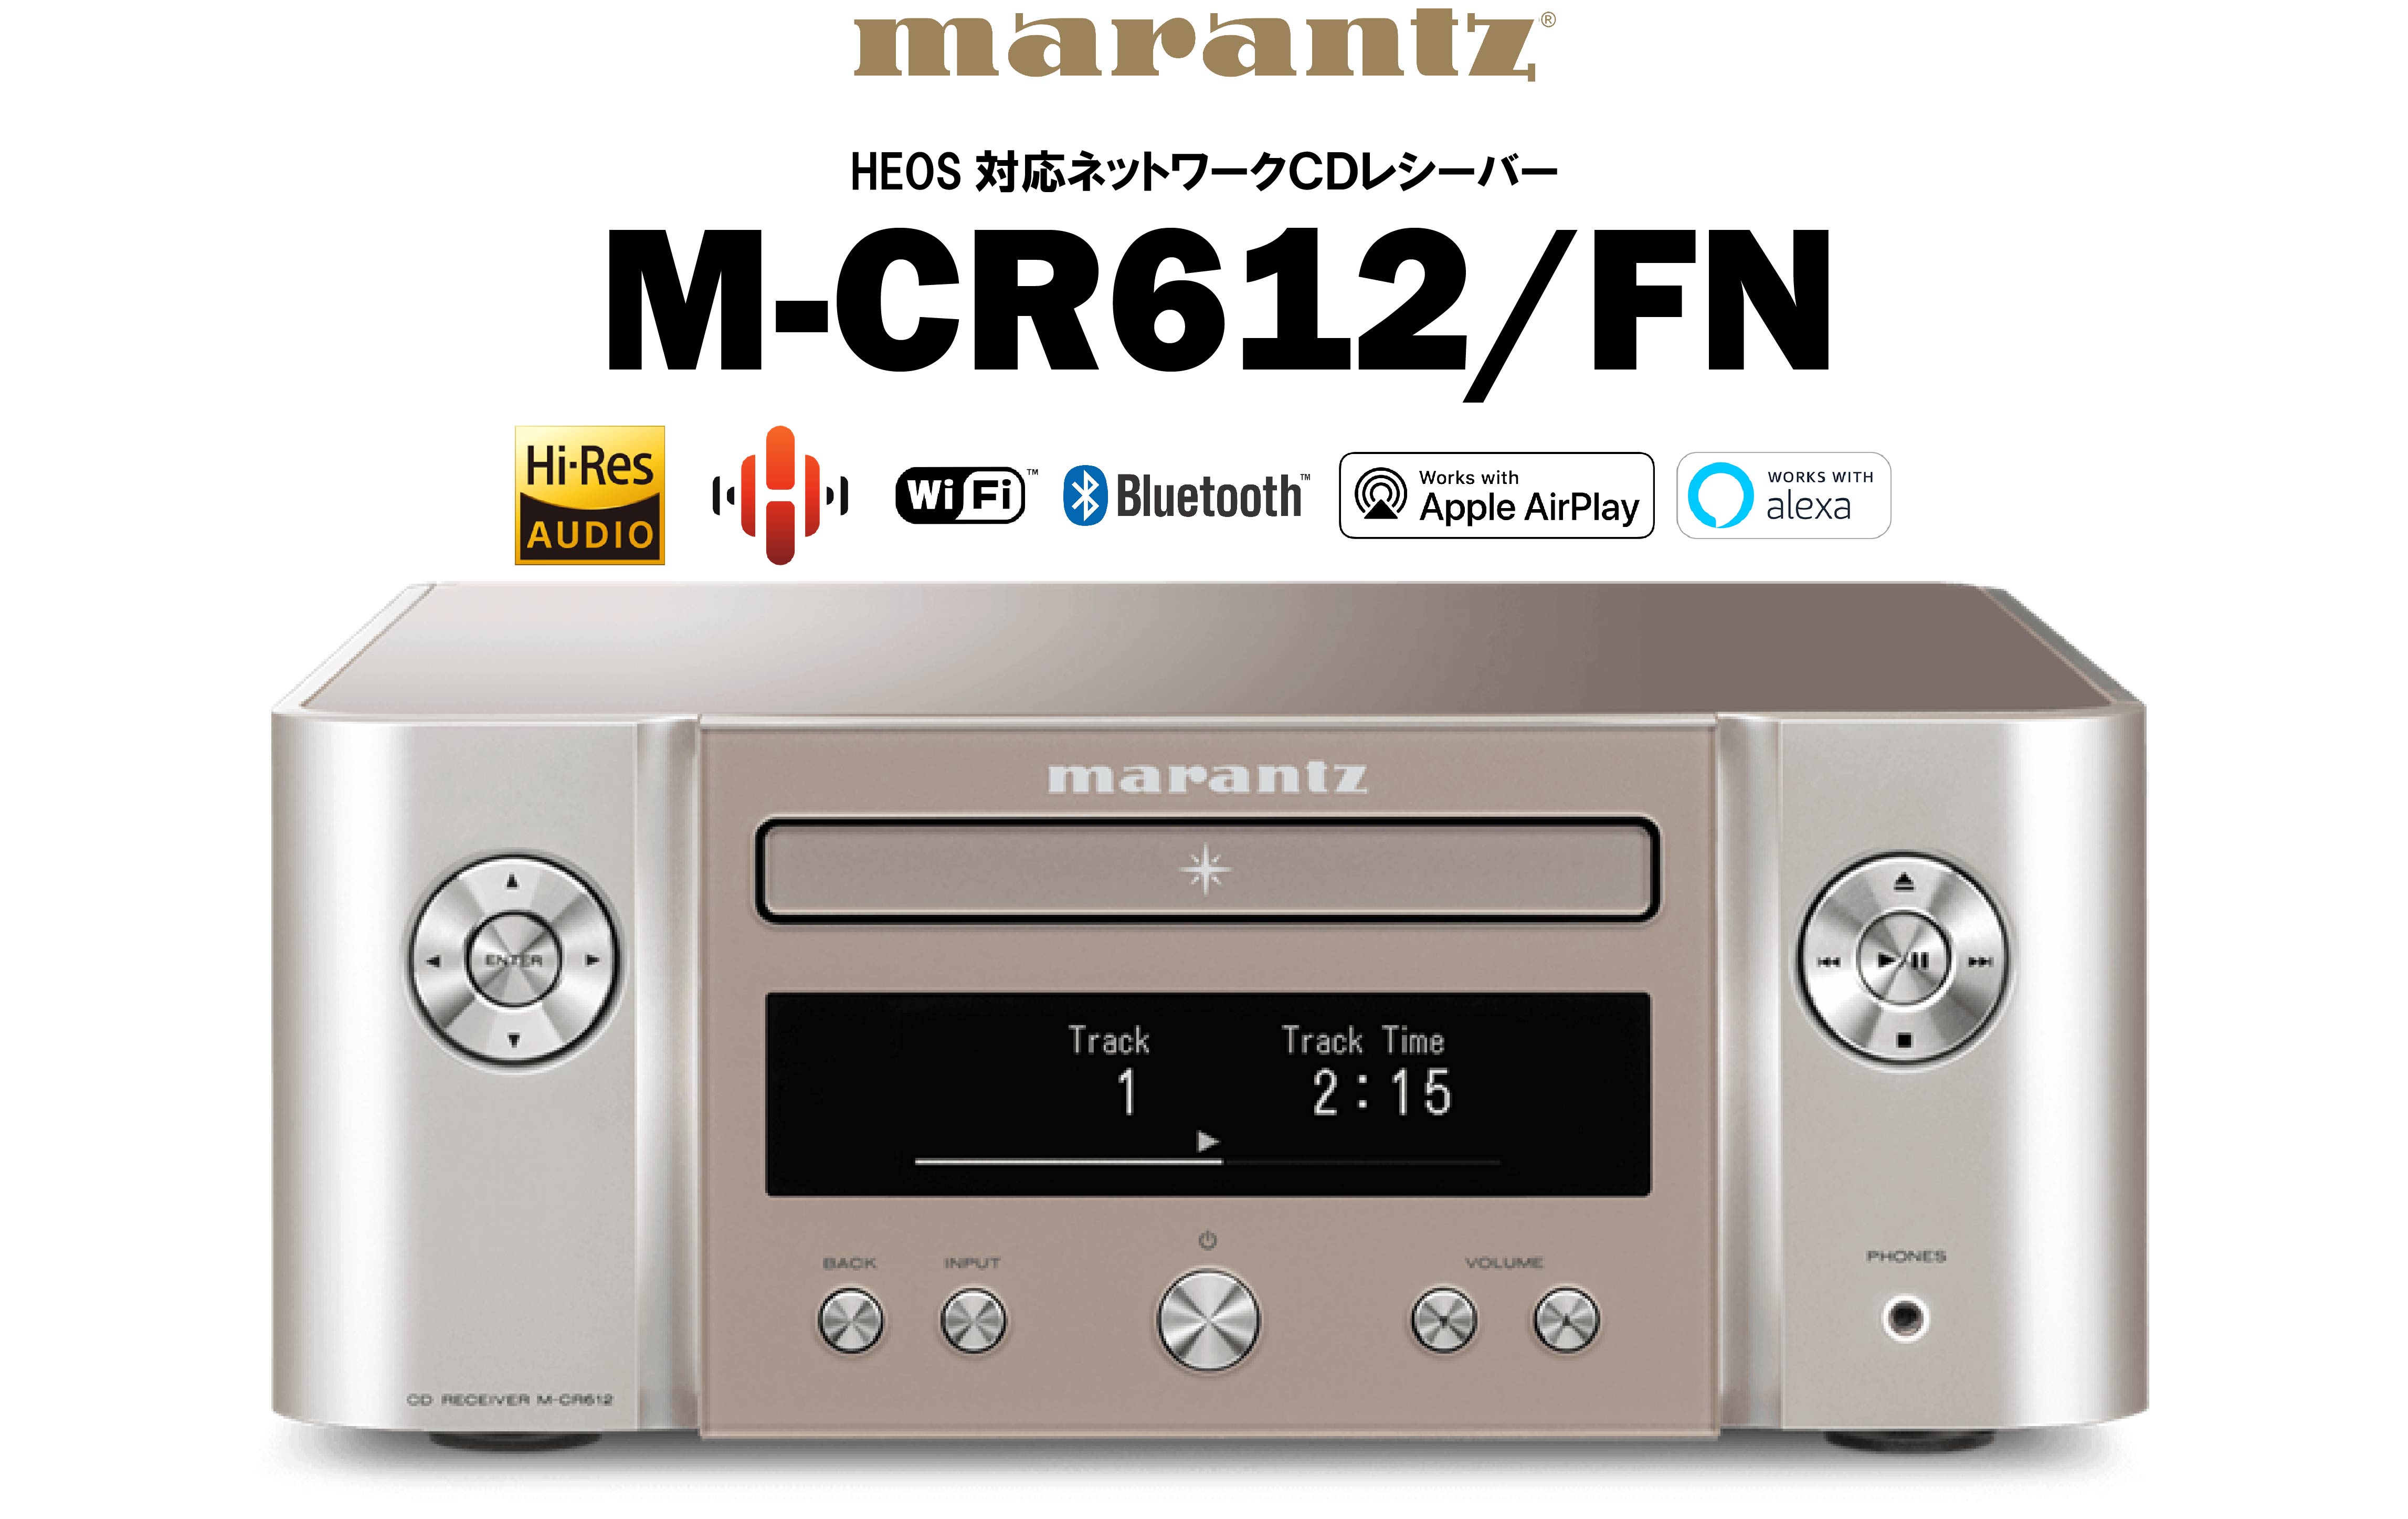 marantz　M-CR612 FN　ネットワークCDレシーバー